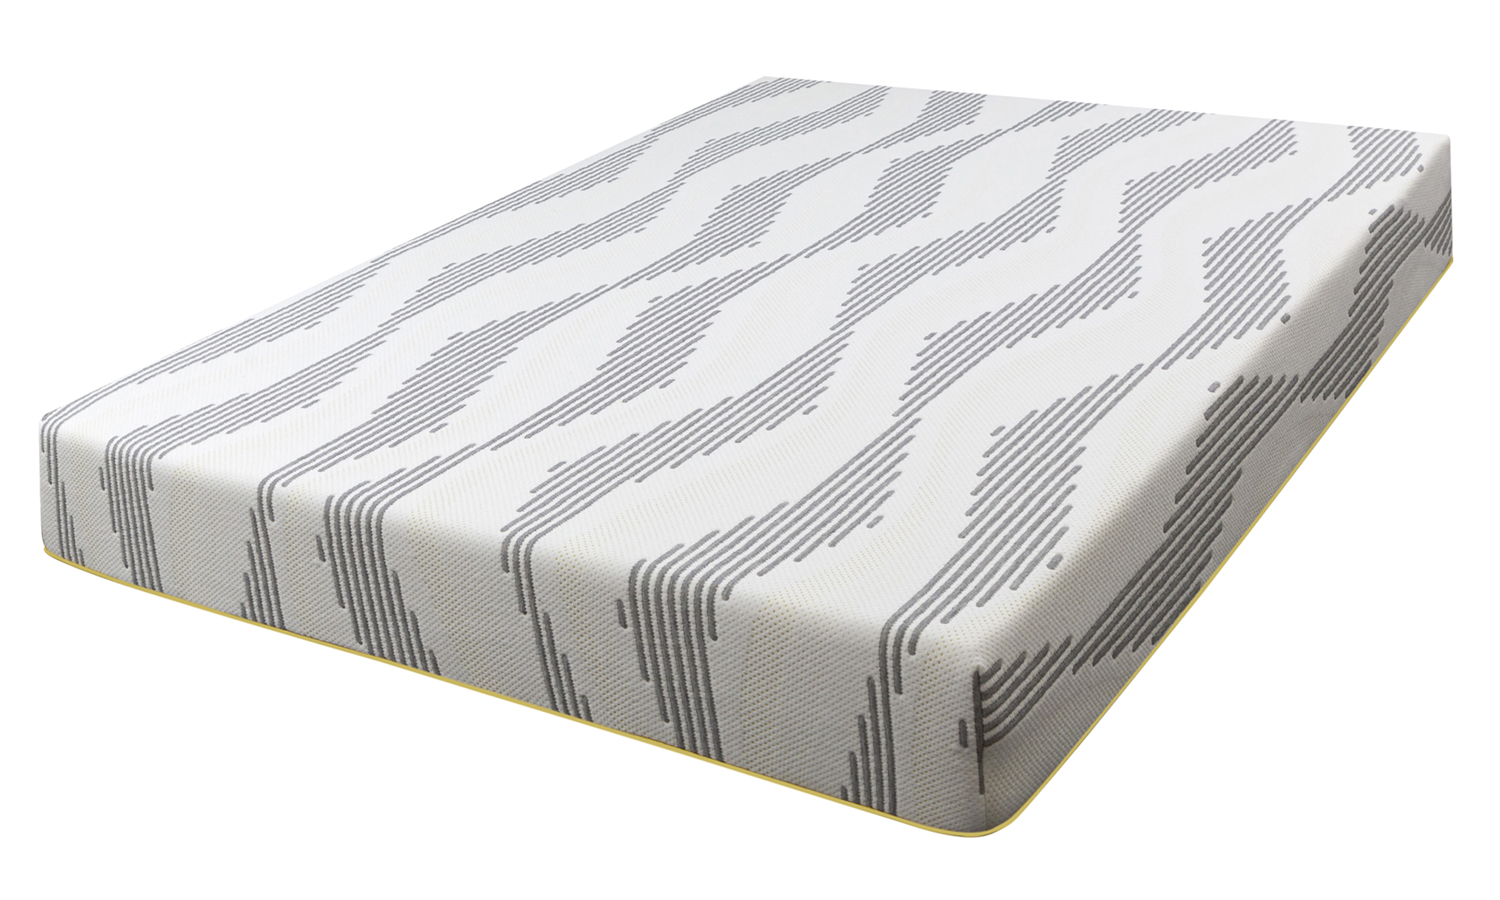 mattress cover for storing a mattress